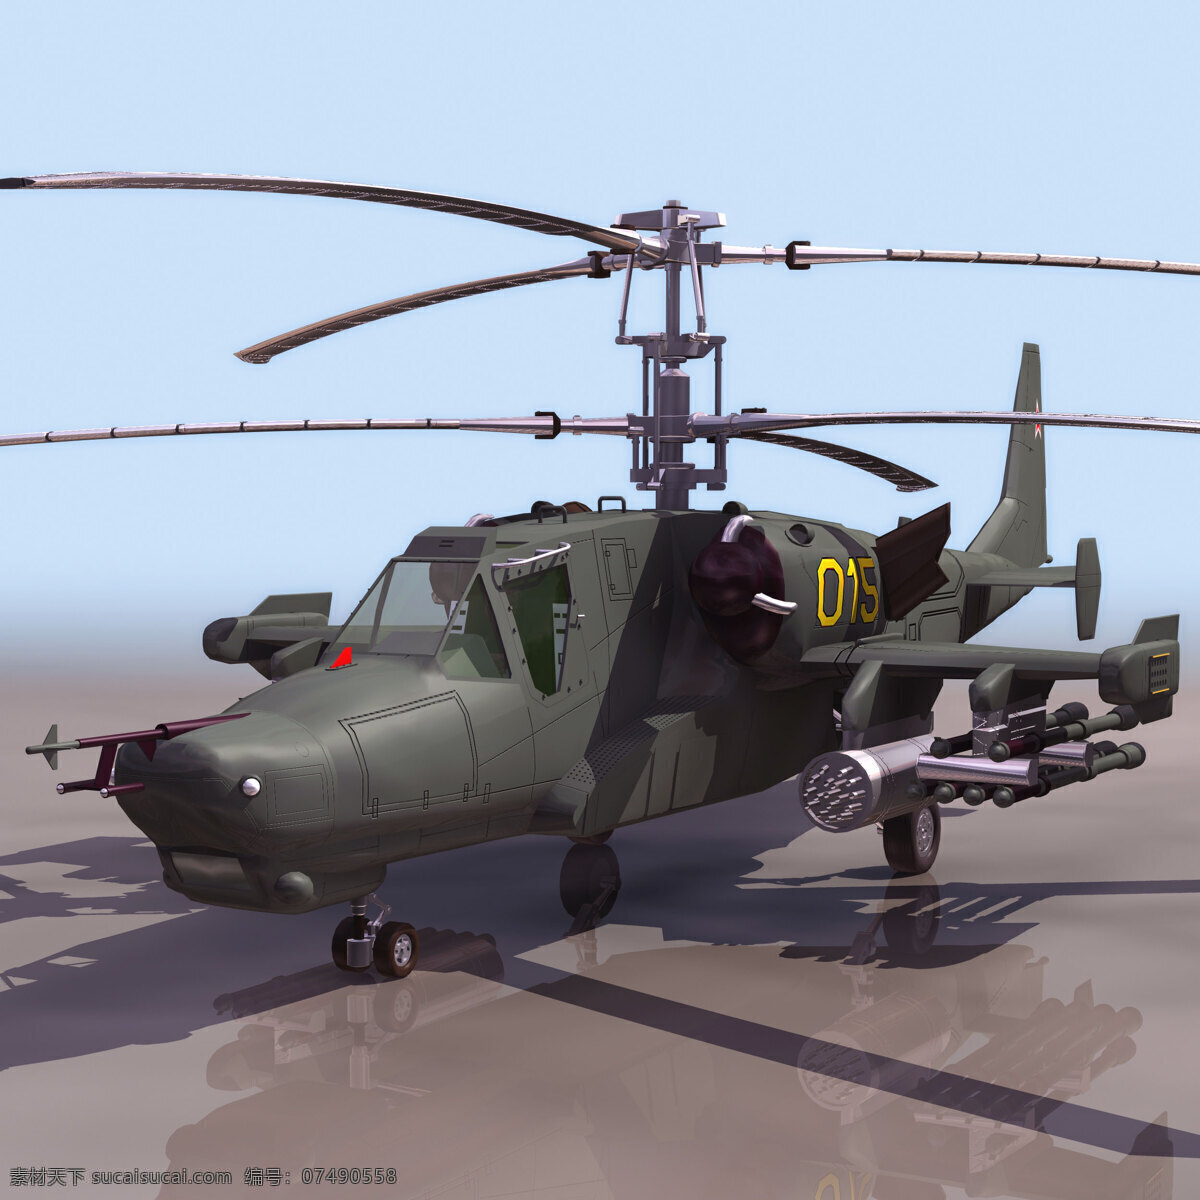 卡 噱头 直升机 带 贴图 军事模型 空军武器库 3d模型素材 其他3d模型